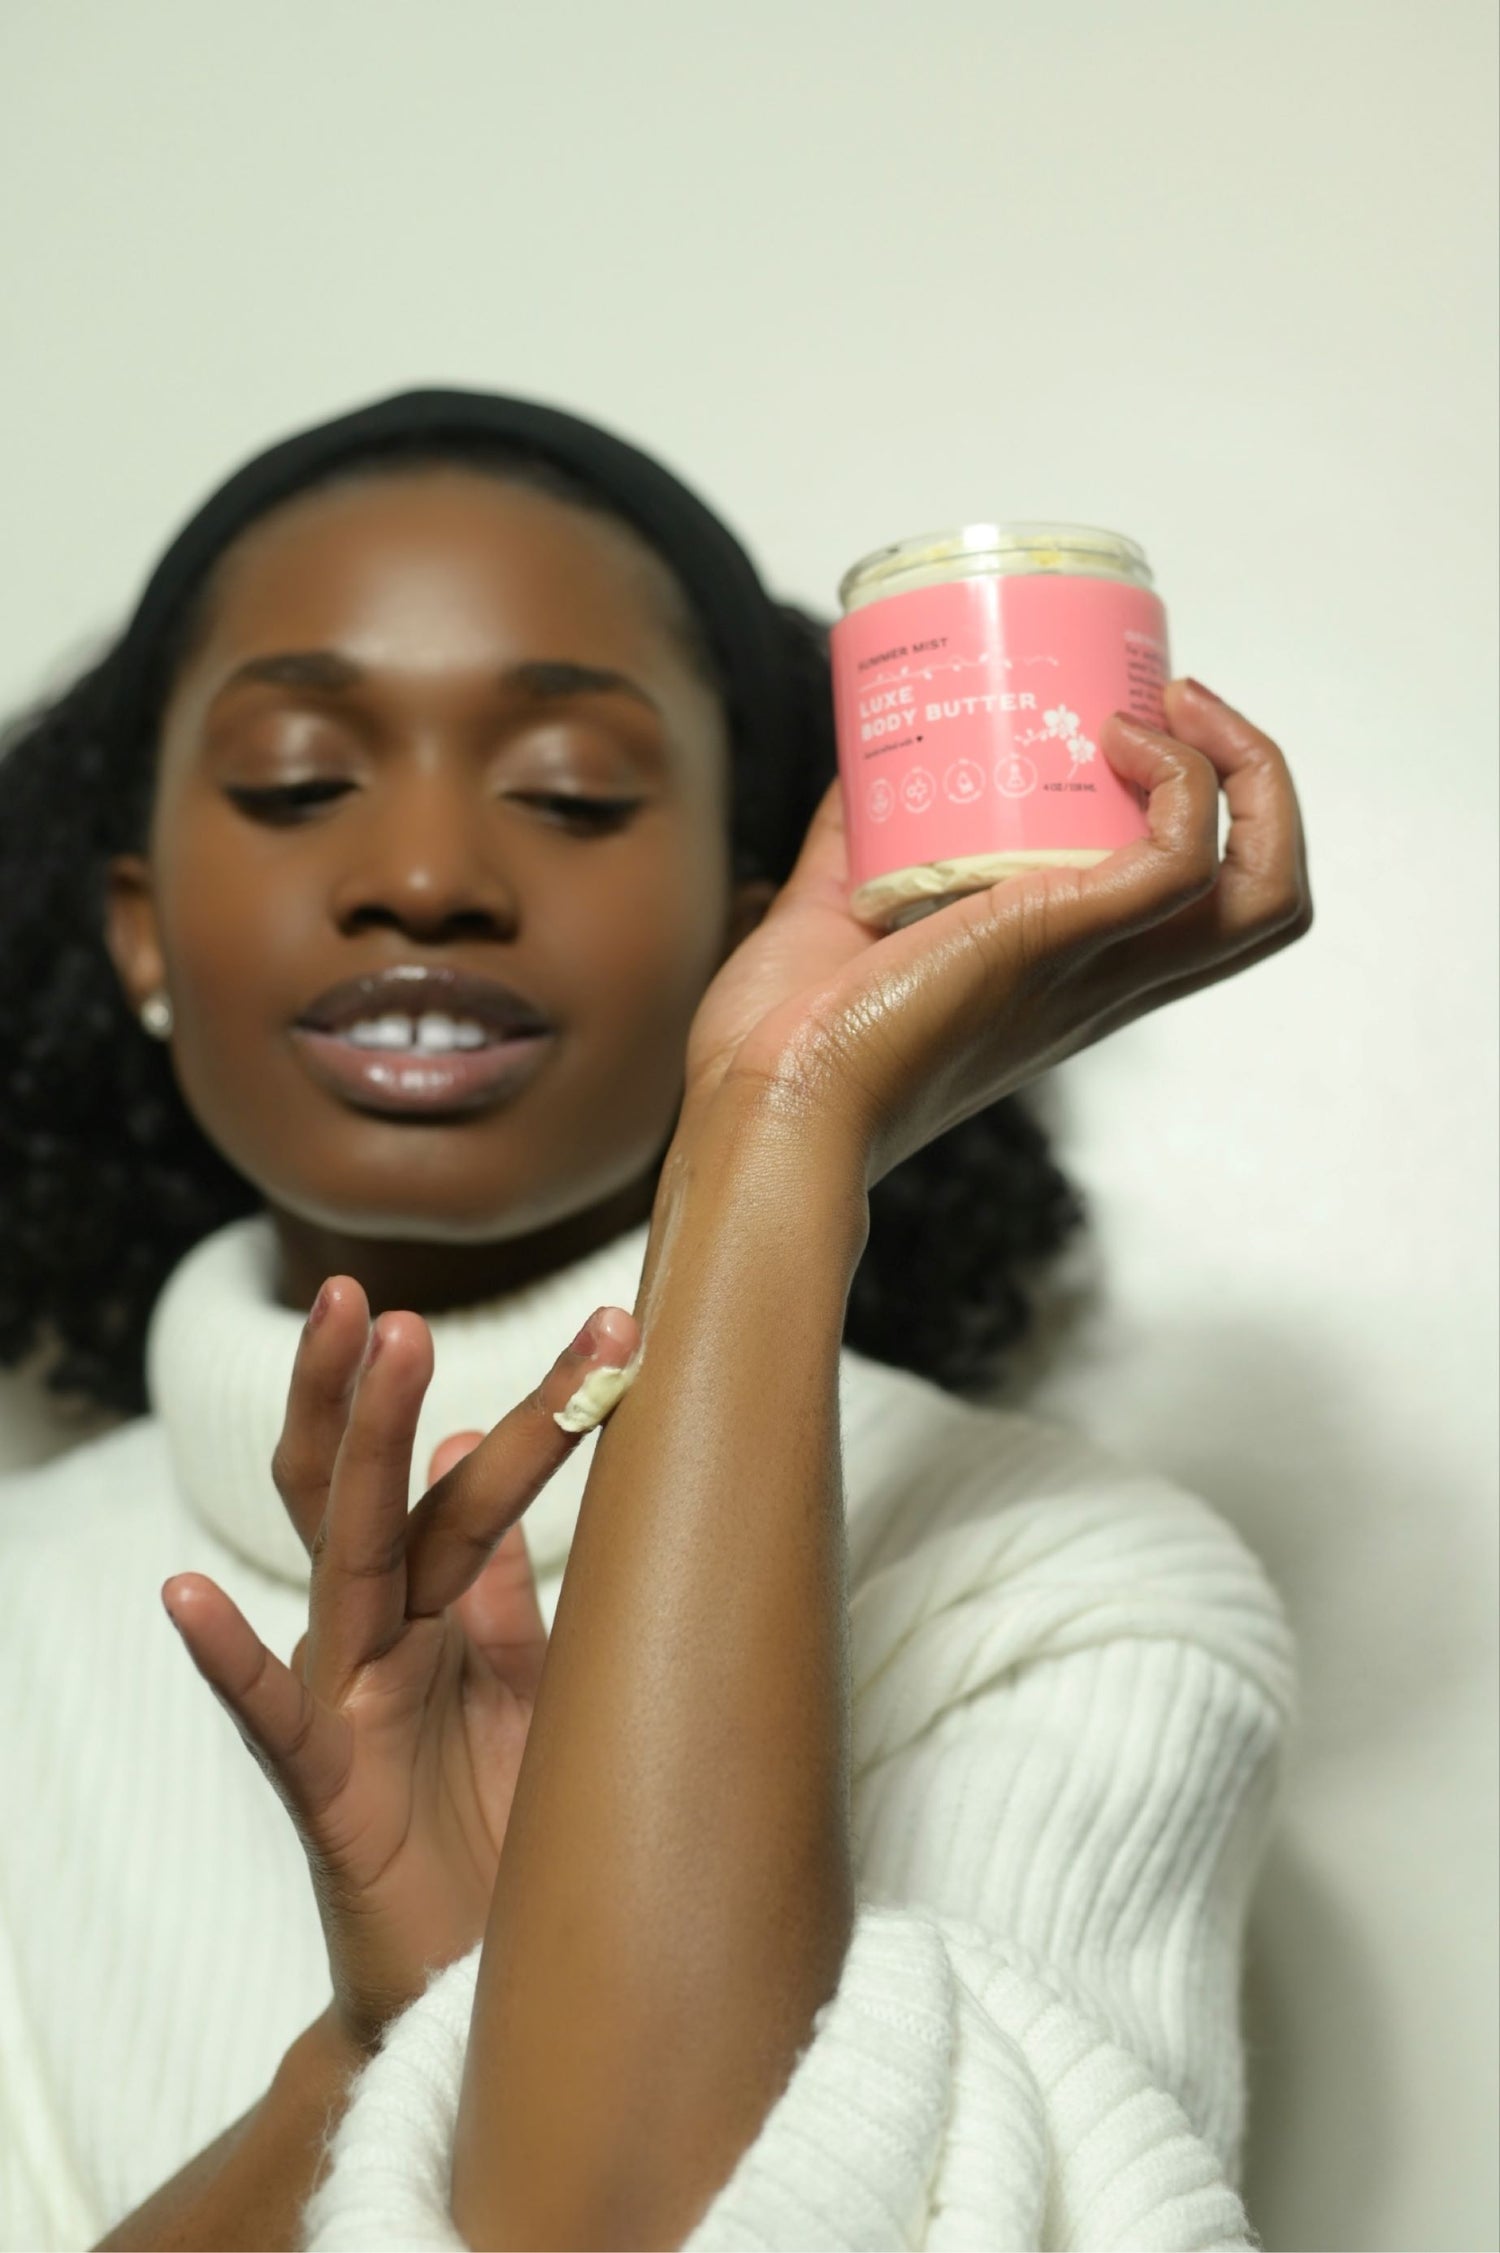 Black female model applying zen & bloom body butter to hand